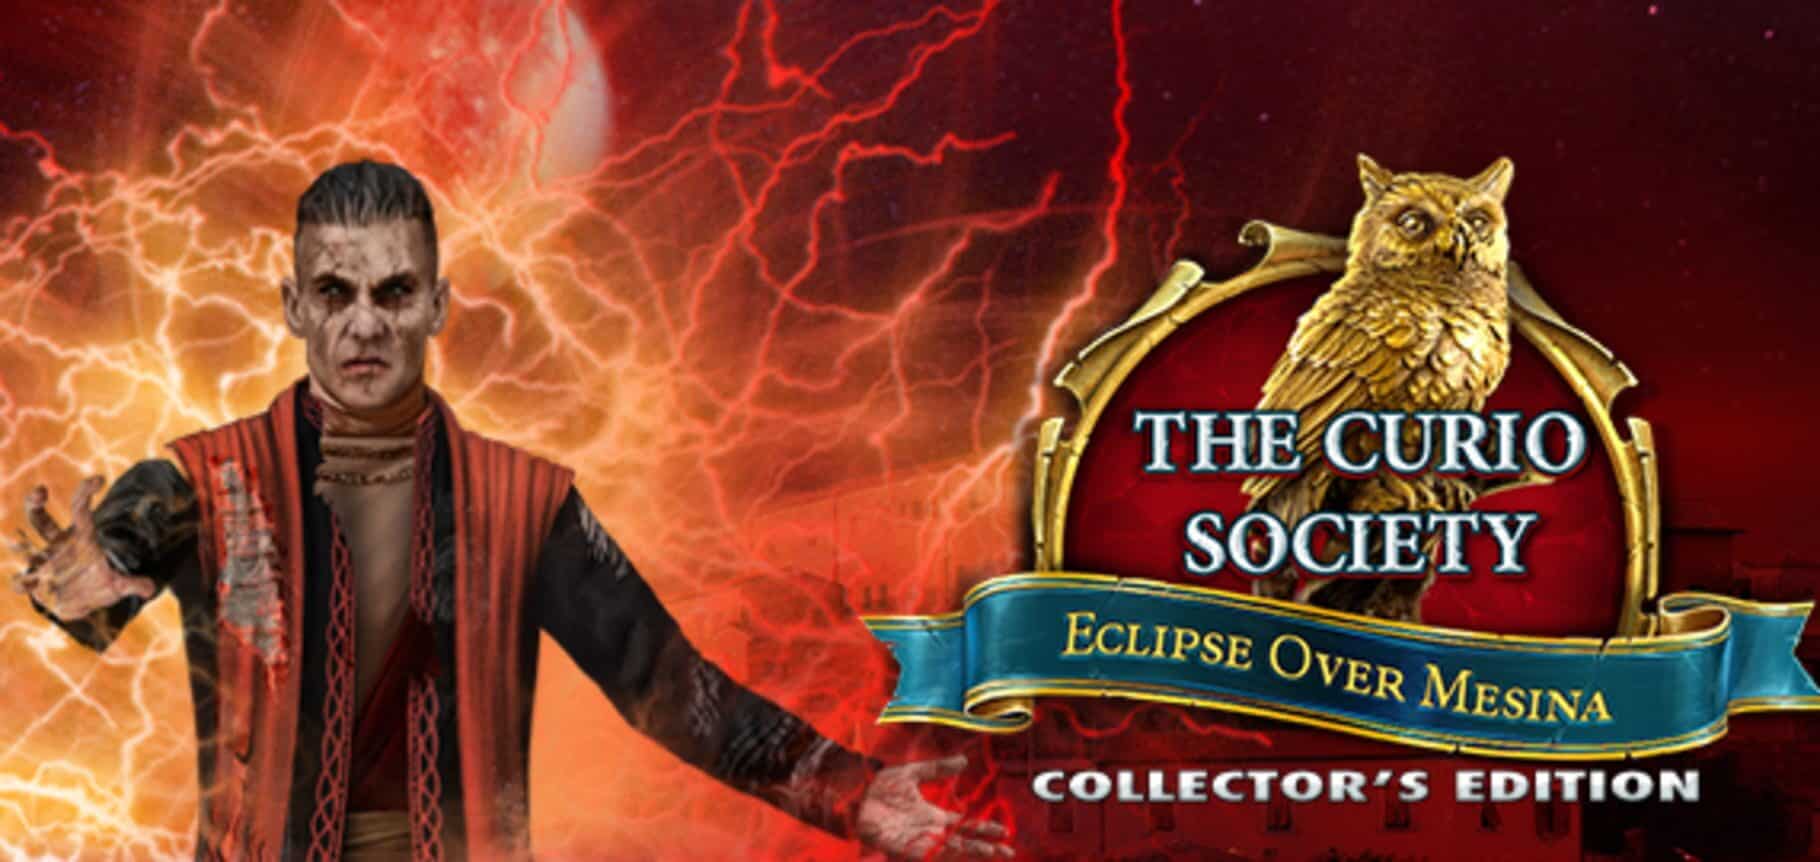 The Curio Society: Eclipse Over Mesina